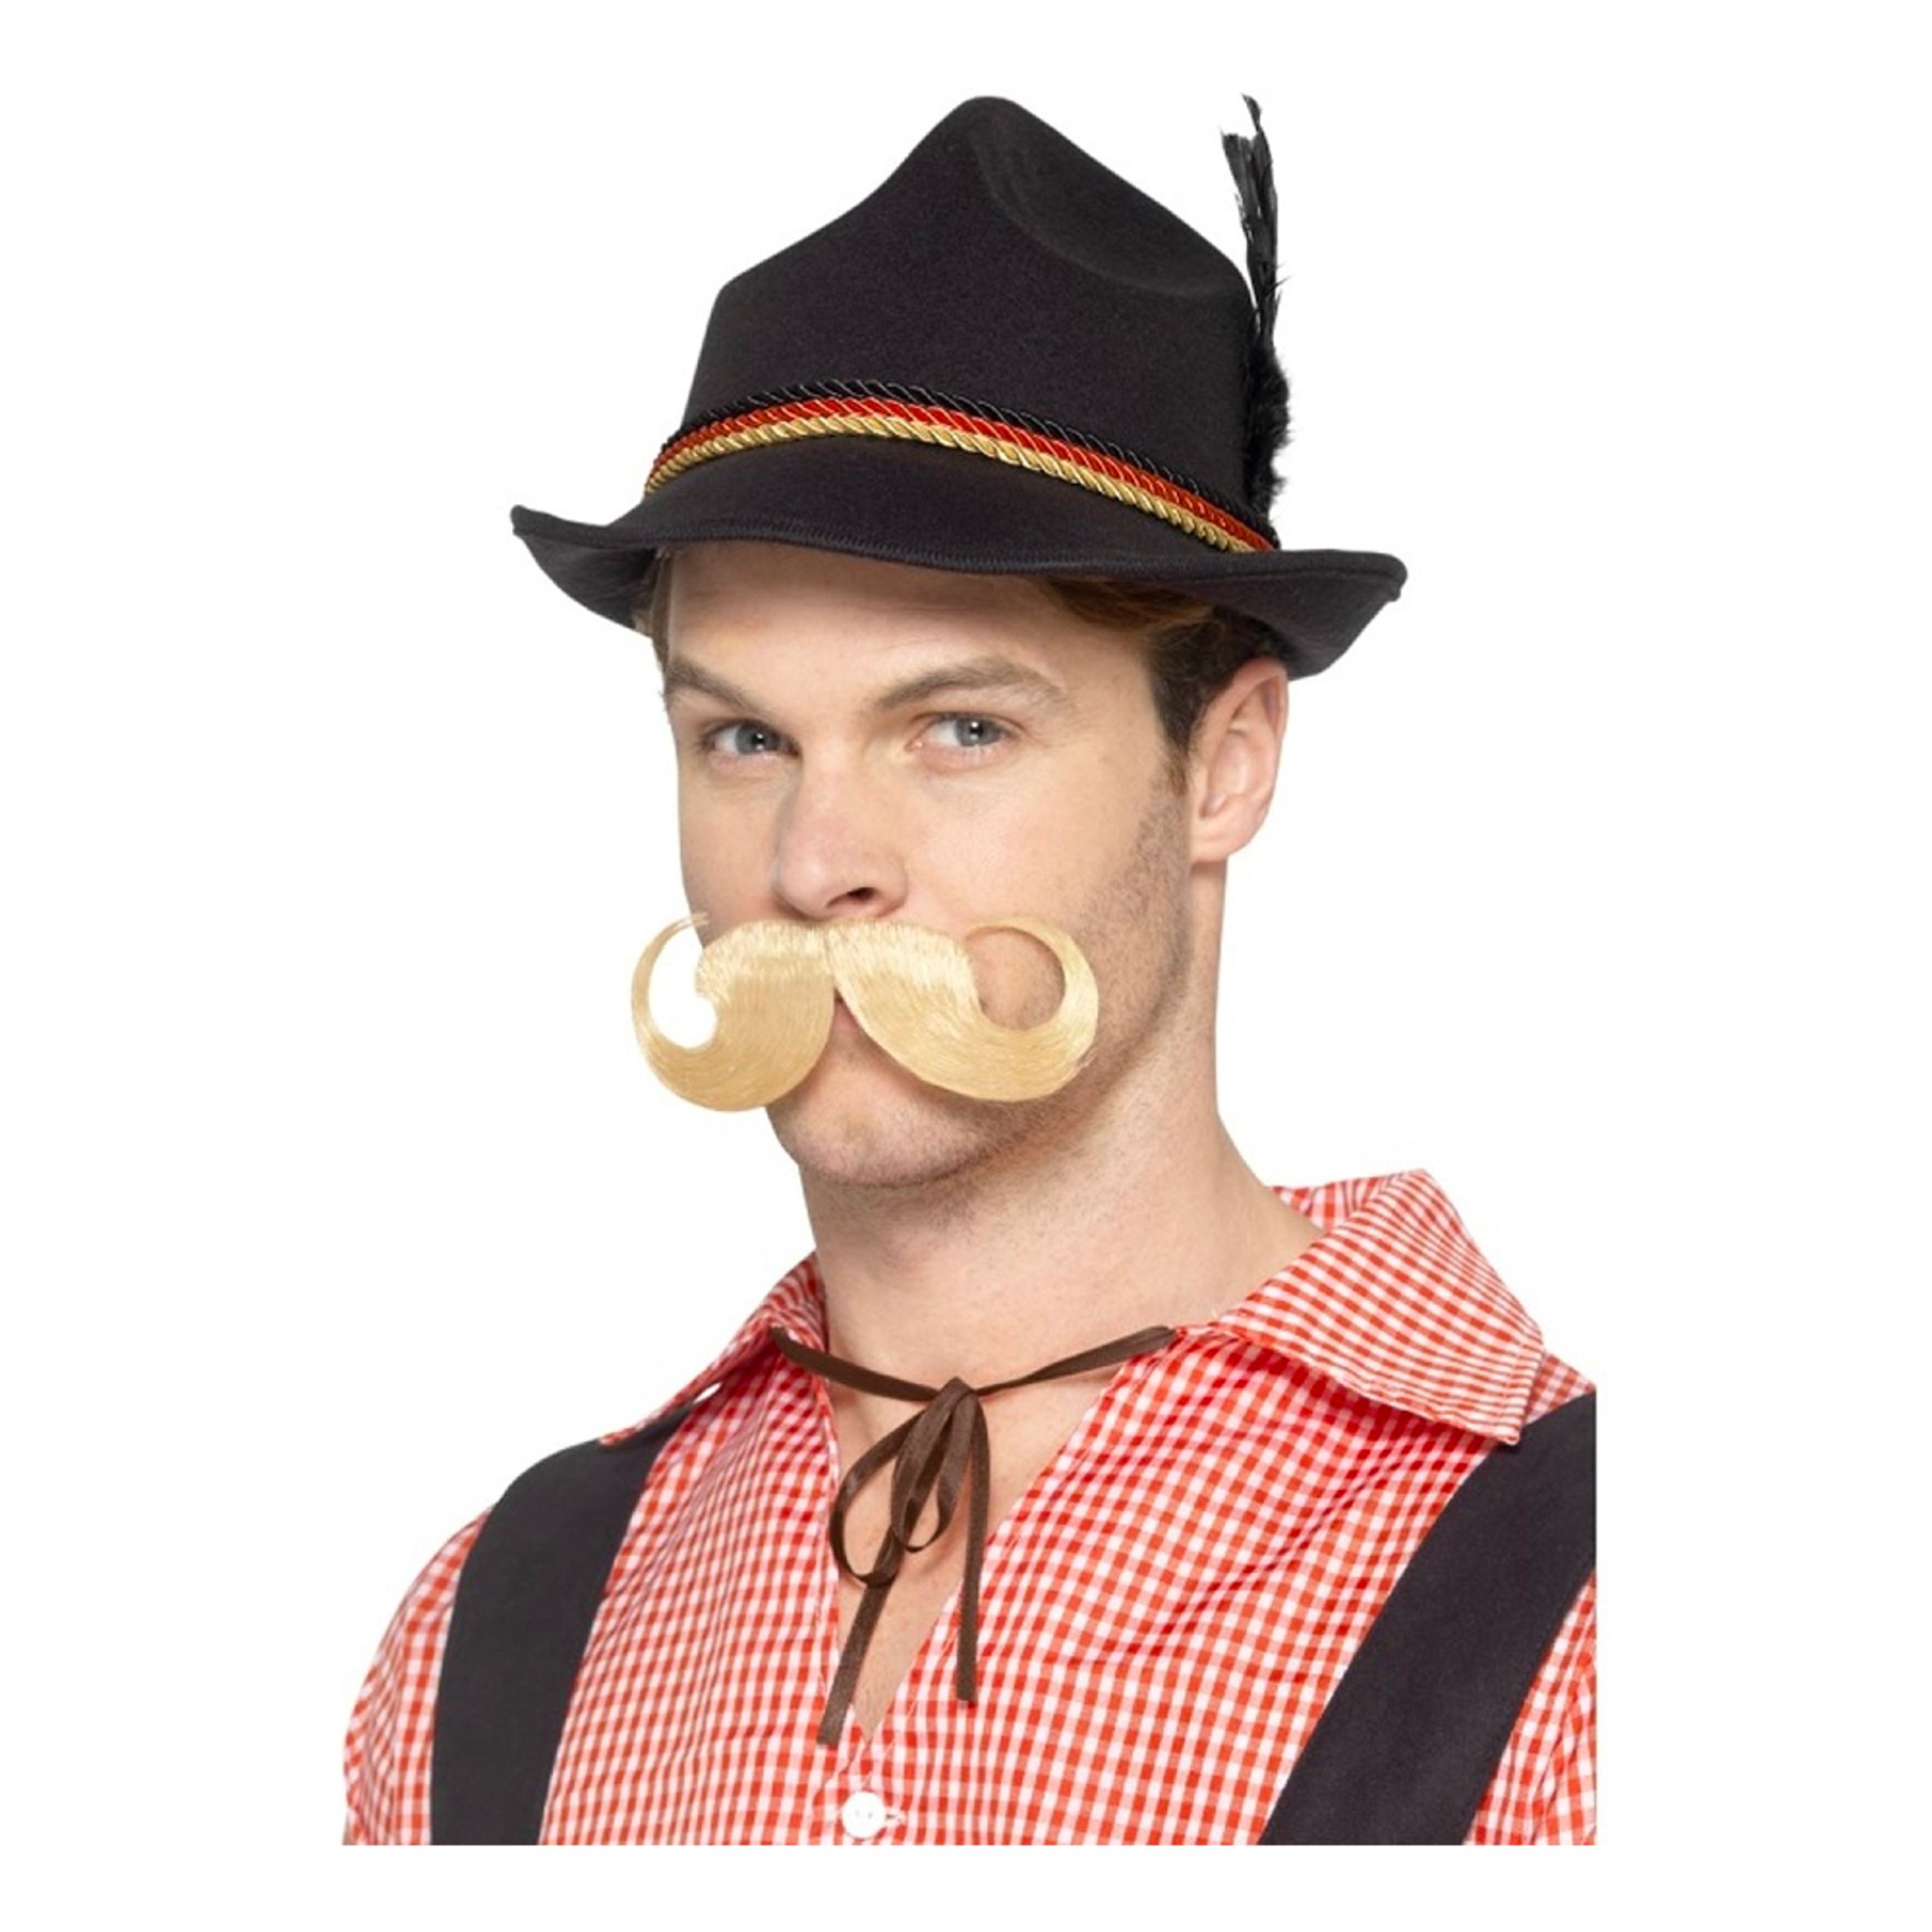 Tysk Trenker Deluxe Hatt - One size